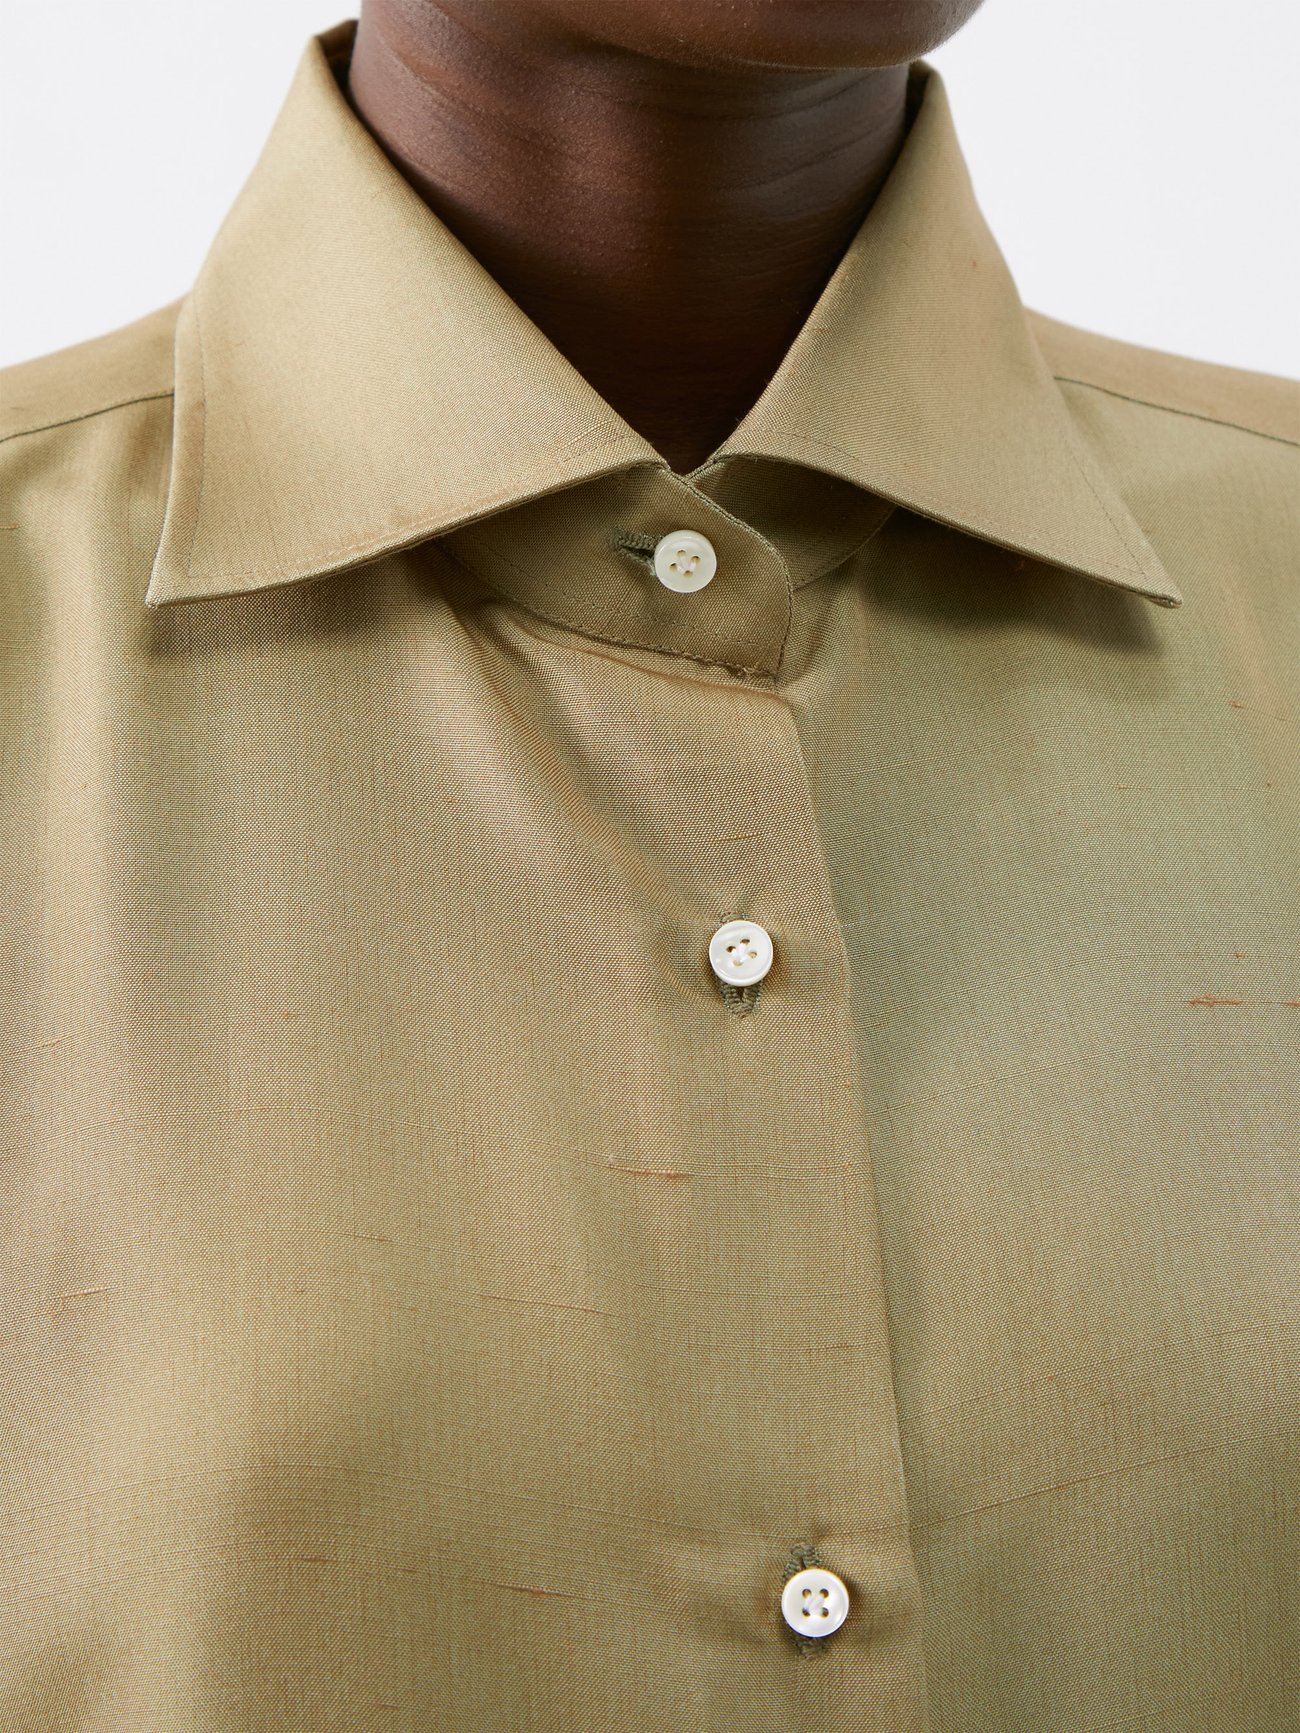 Prestige Green Medusa Silky Short Sleeve Shirt Italian Design DPP340